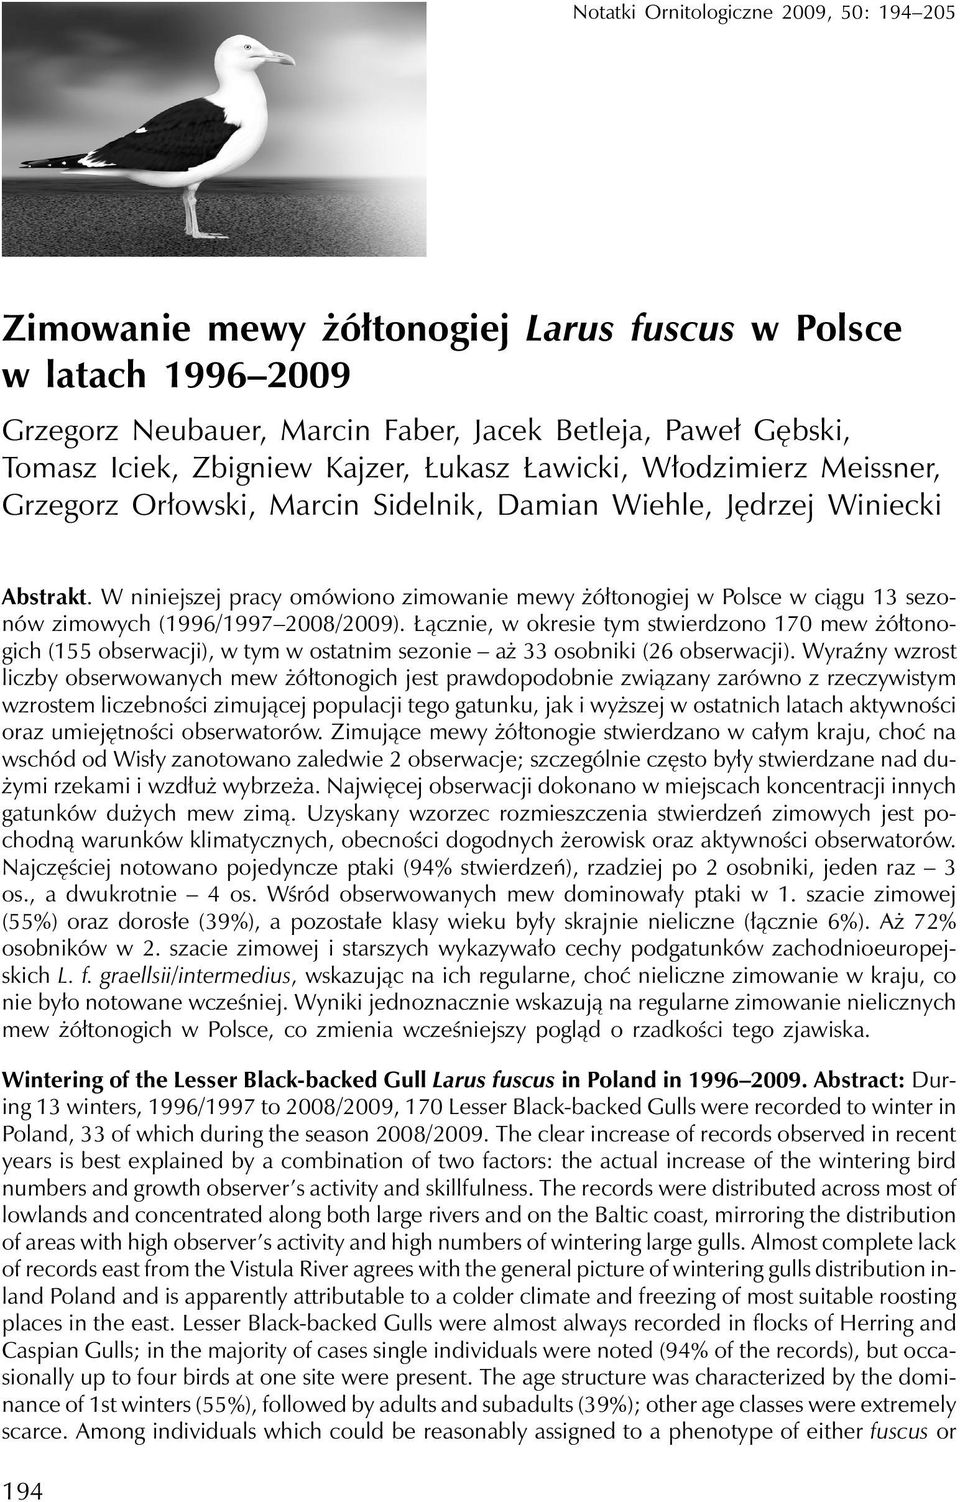 W niniejszej pracy omówiono zimowanie mewy żółtonogiej w Polsce w ciągu 13 sezonów zimowych (1996/1997 2008/2009).